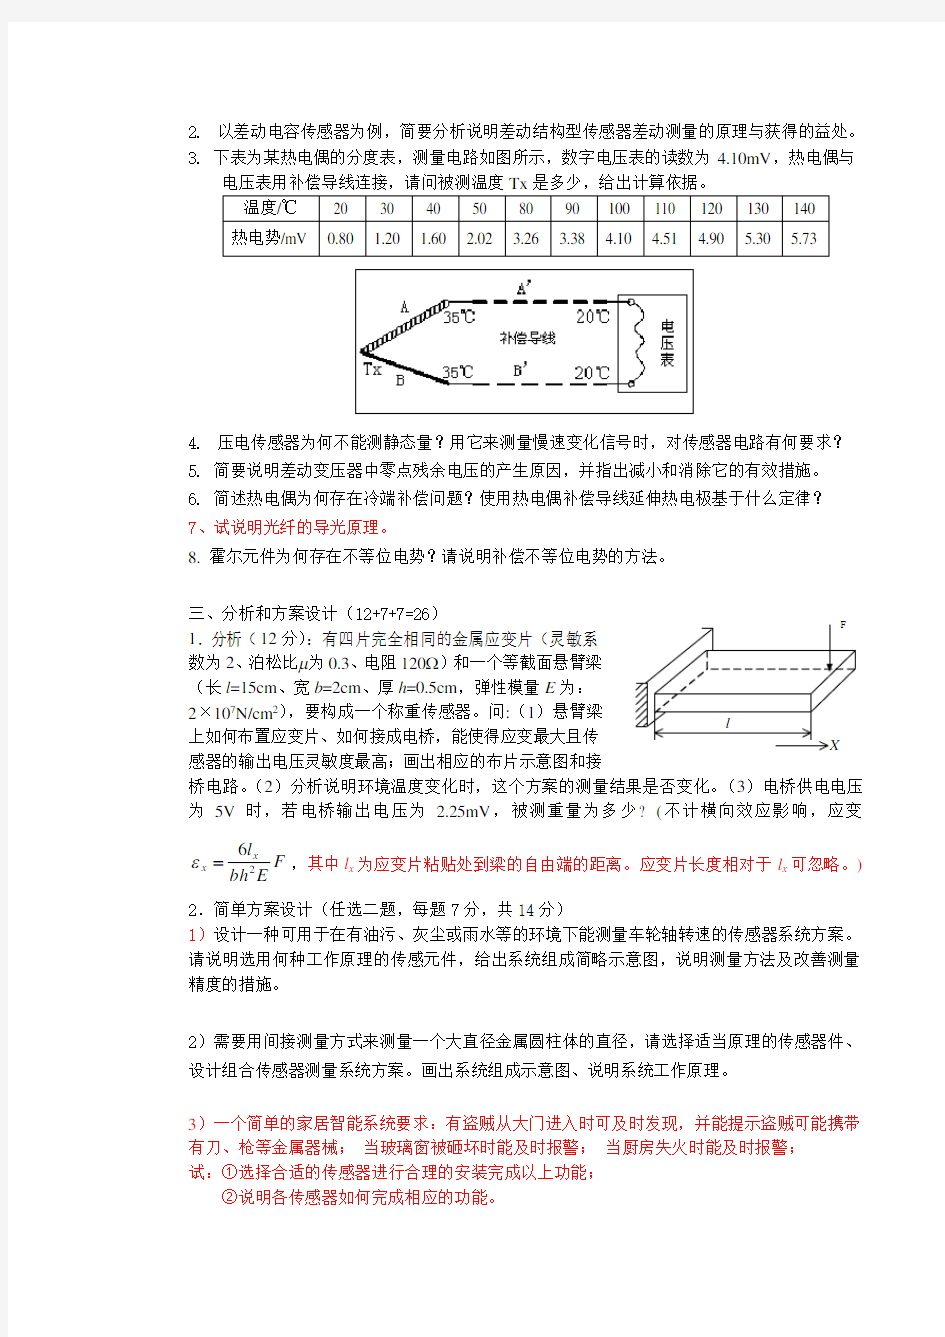 中南大学《传感器原理及应用》考试试卷(含答案)